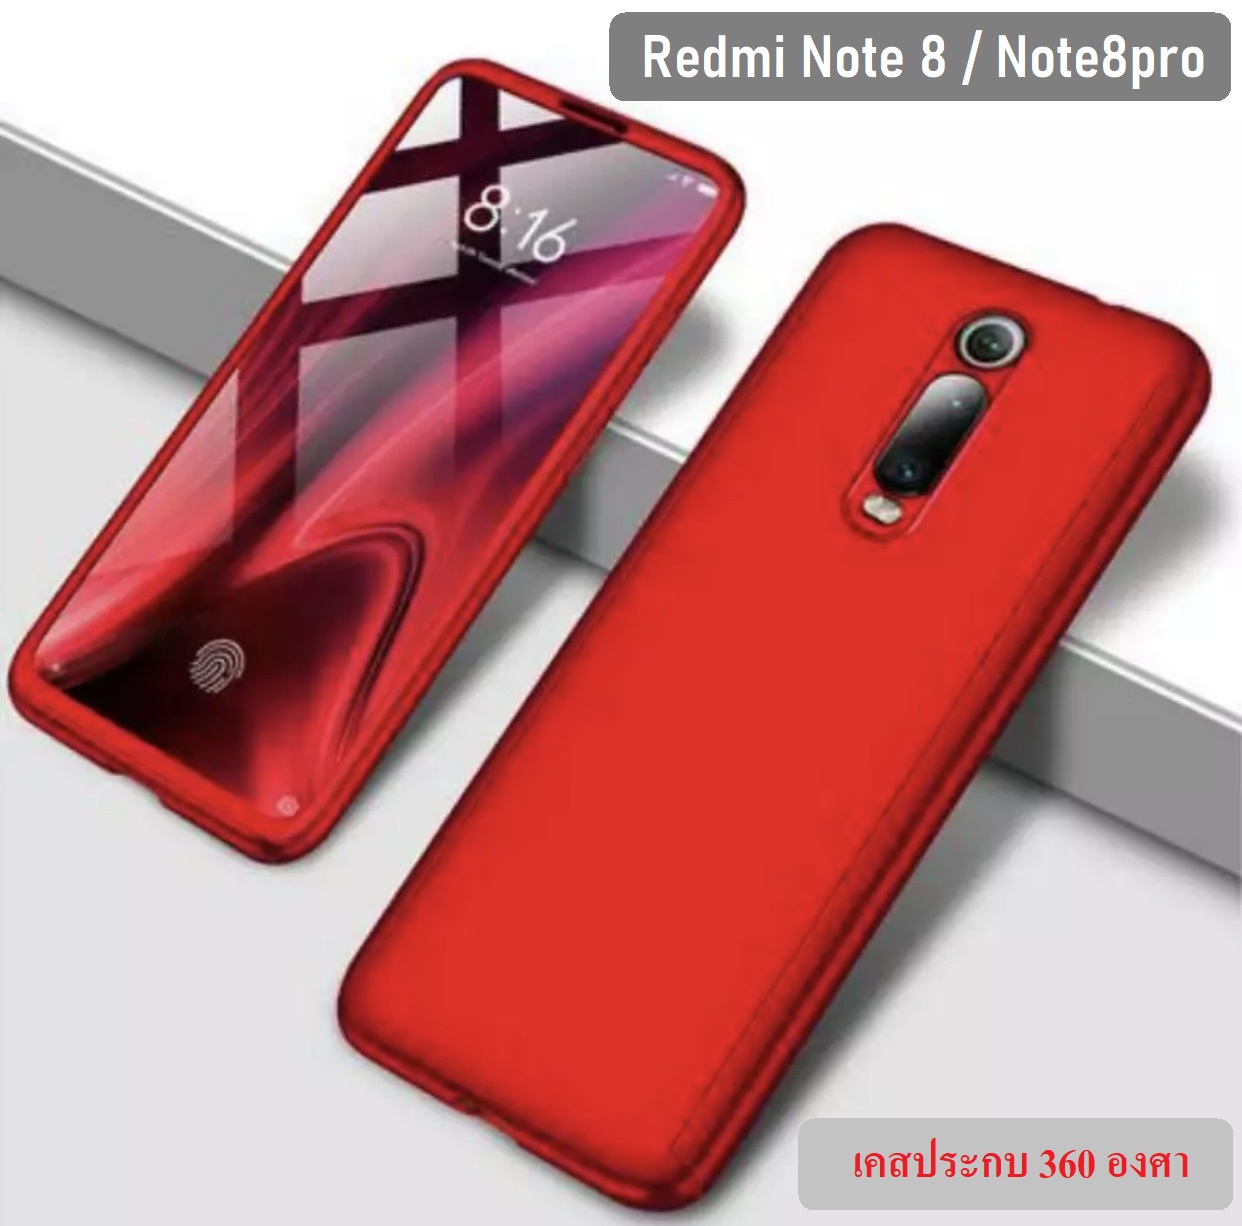 สินค้าพร้อมส่ง!! Case Xiaomi Redmi Note 8 เคส Redmi Note 8 เคสประกบ 360 องศา สวยและบางมาก Xiaomi Redmi Note8 Case สินค้าใหม่ สี สีแดง สี สีแดงรูปแบบรุ่นที่ีรองรับ Redmi Note 8